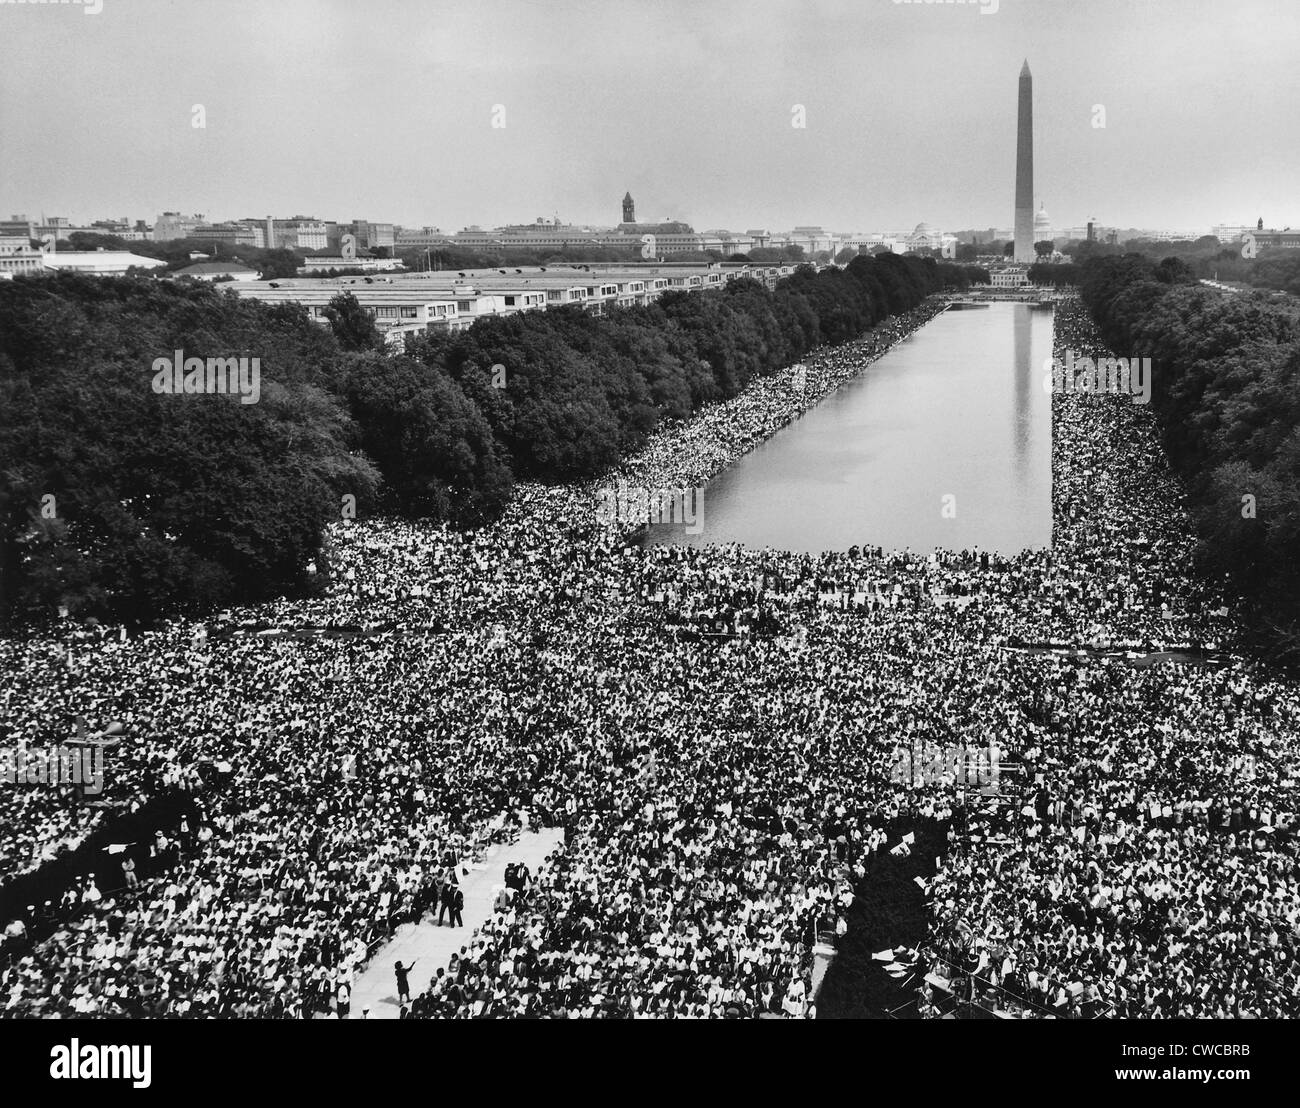 Mars 1963 sur l'État de Washington. Une vue de plus de 200 000 marcheurs le long de la Capitol Mall. Le 28 août, 1963 Banque D'Images